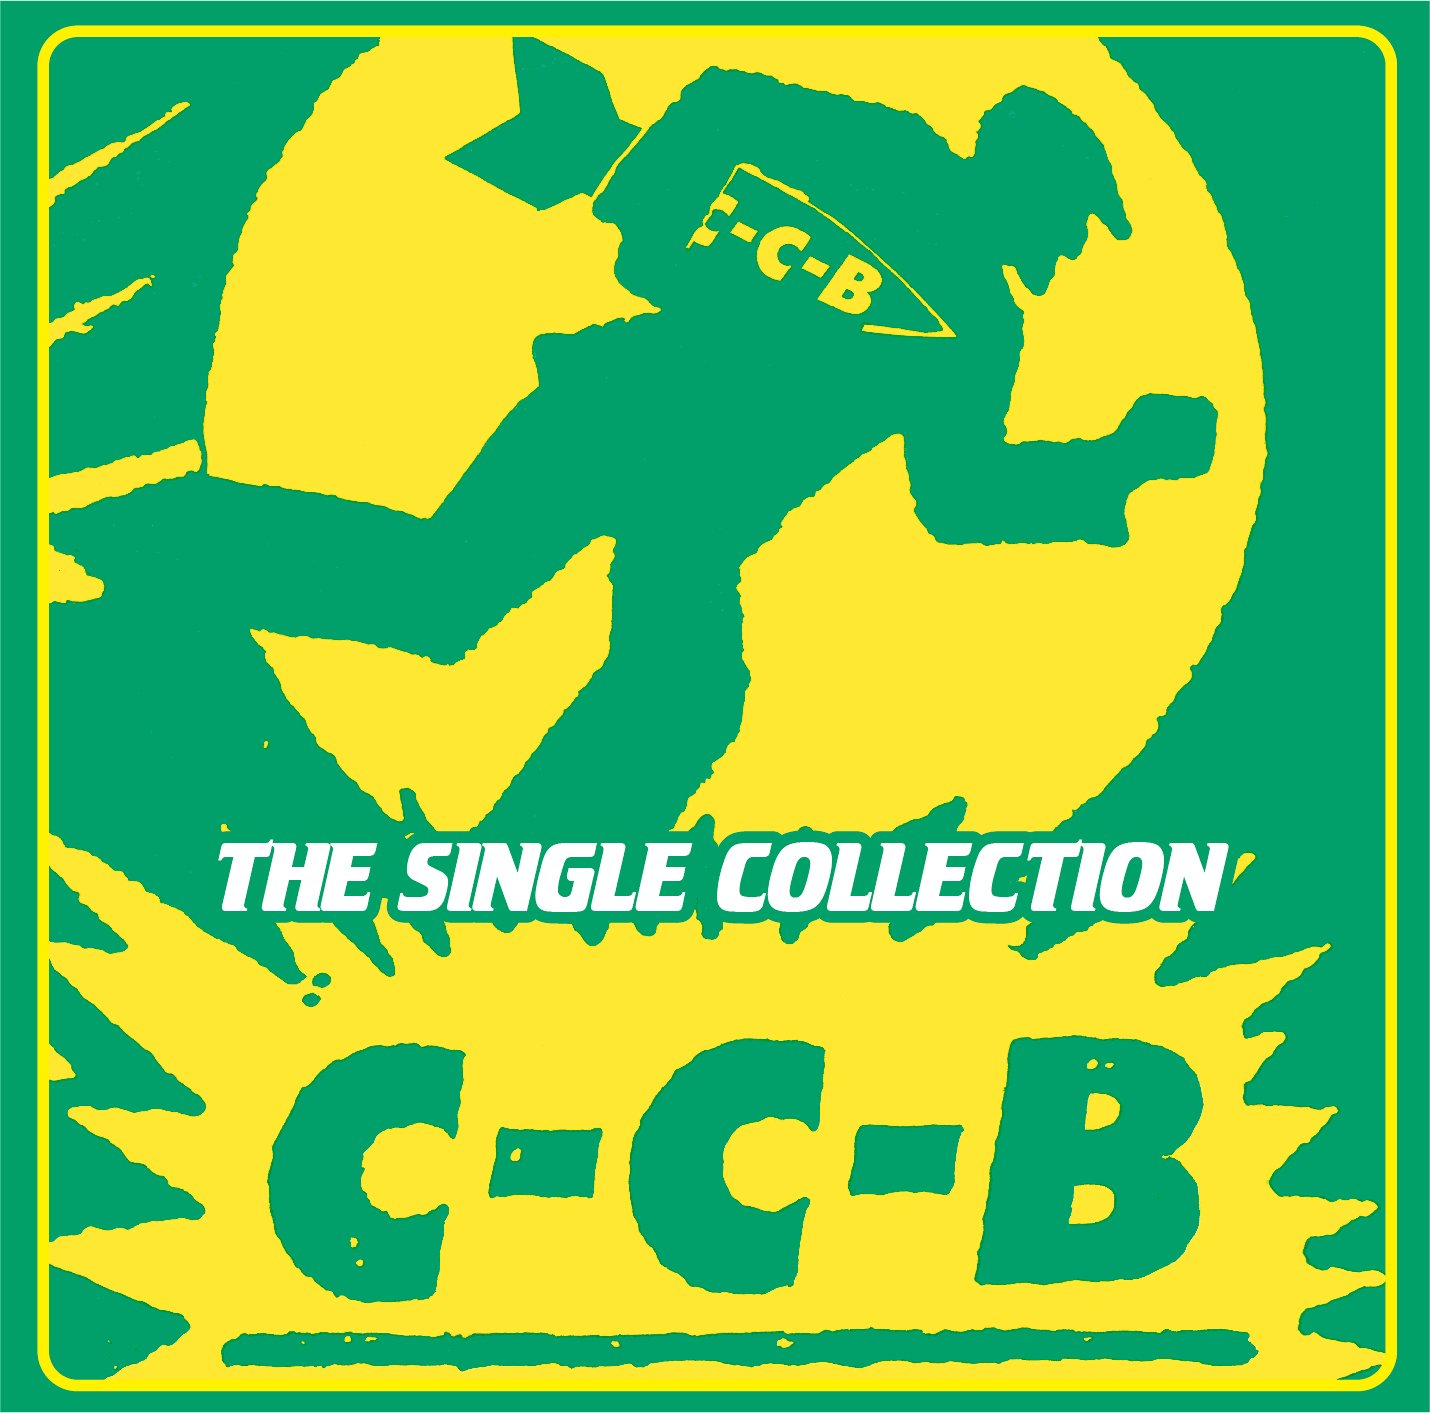 デビュー40周年を迎えたC-C-B 初のシングルコレクション発売決定